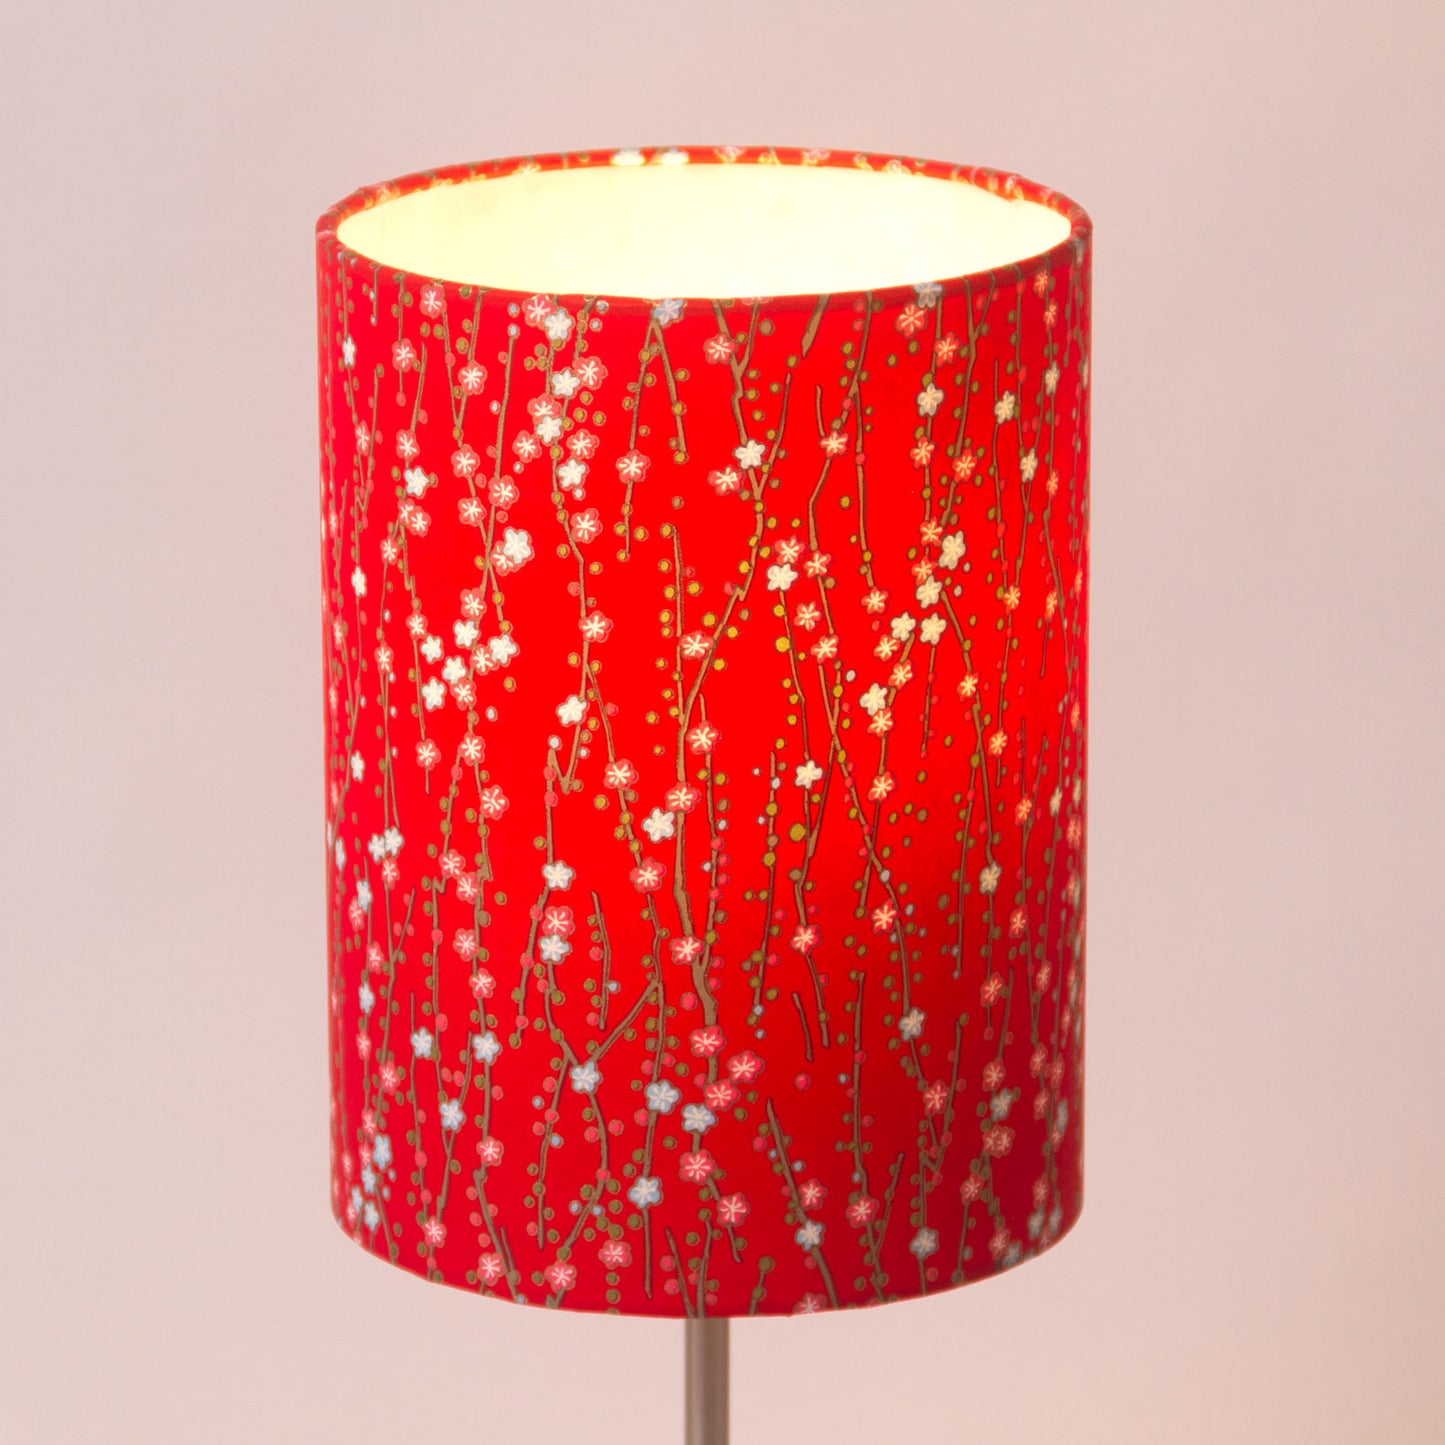 Oval Lamp Shade - W01 ~ Red Daisies, 30cm(w) x 20cm(h) x 22cm(d)